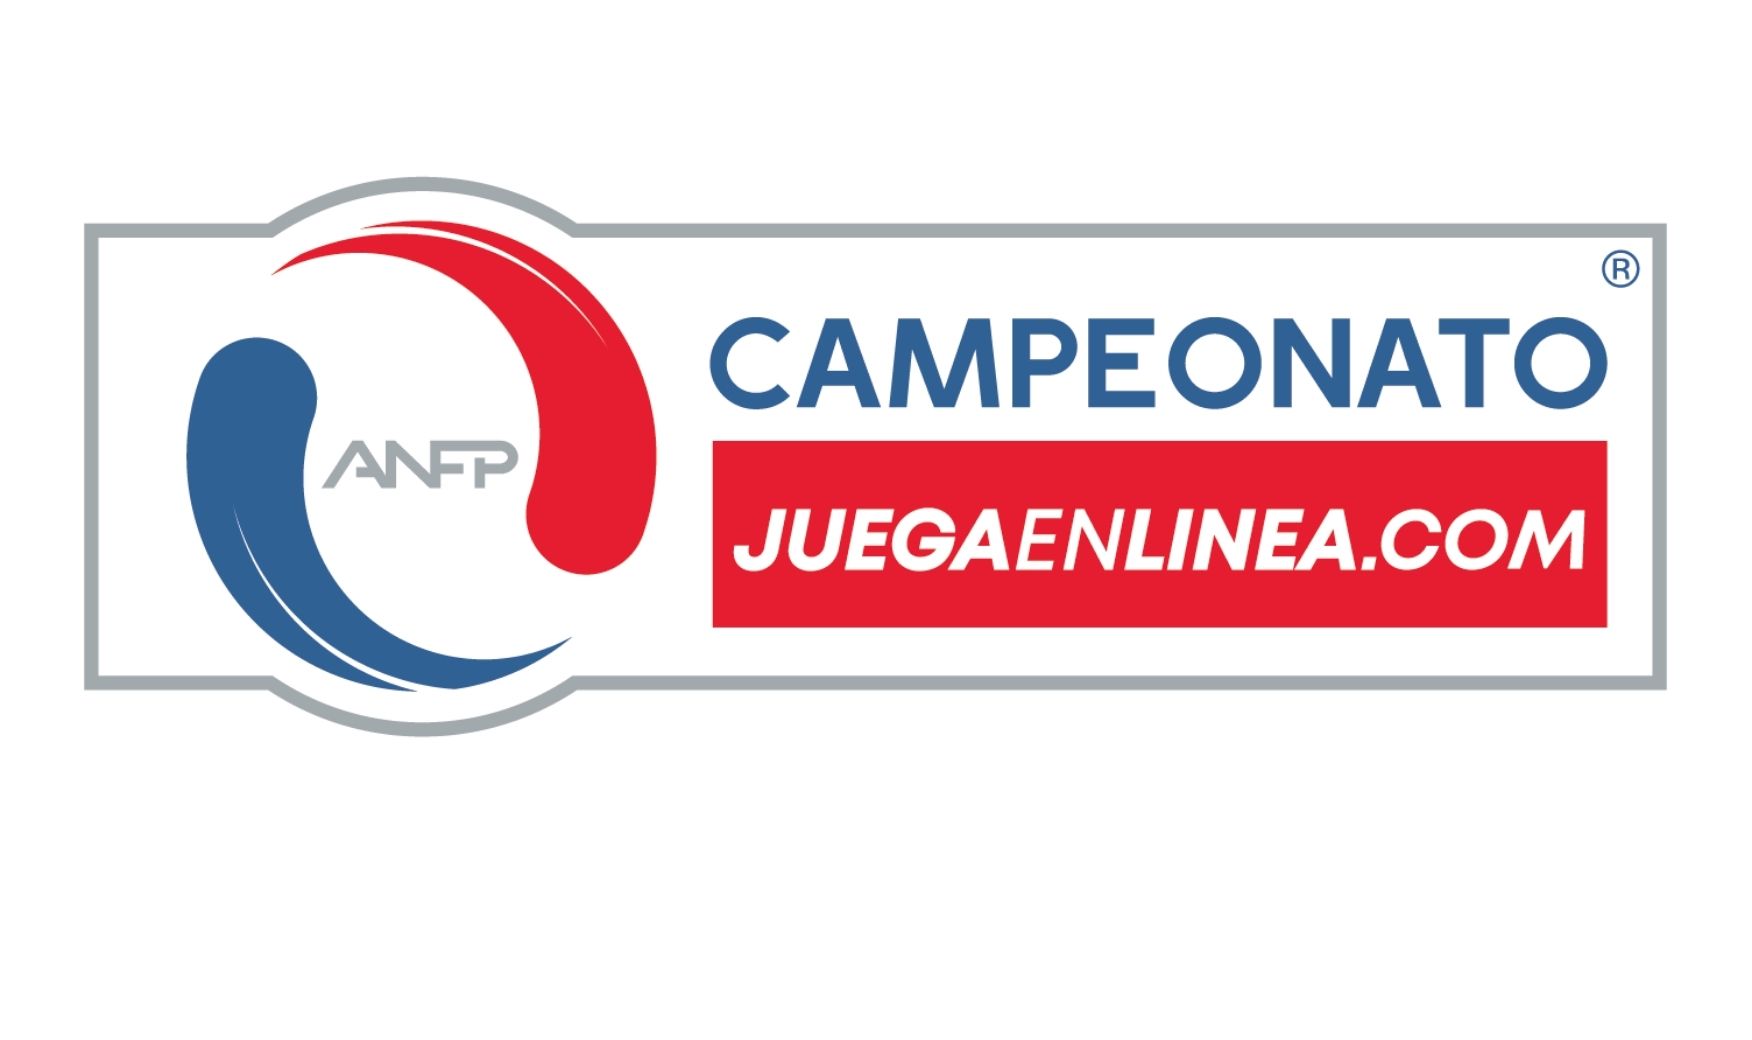 Juegaenlinea.com es el nuevo sponsor del campeonato nacional de Primera B